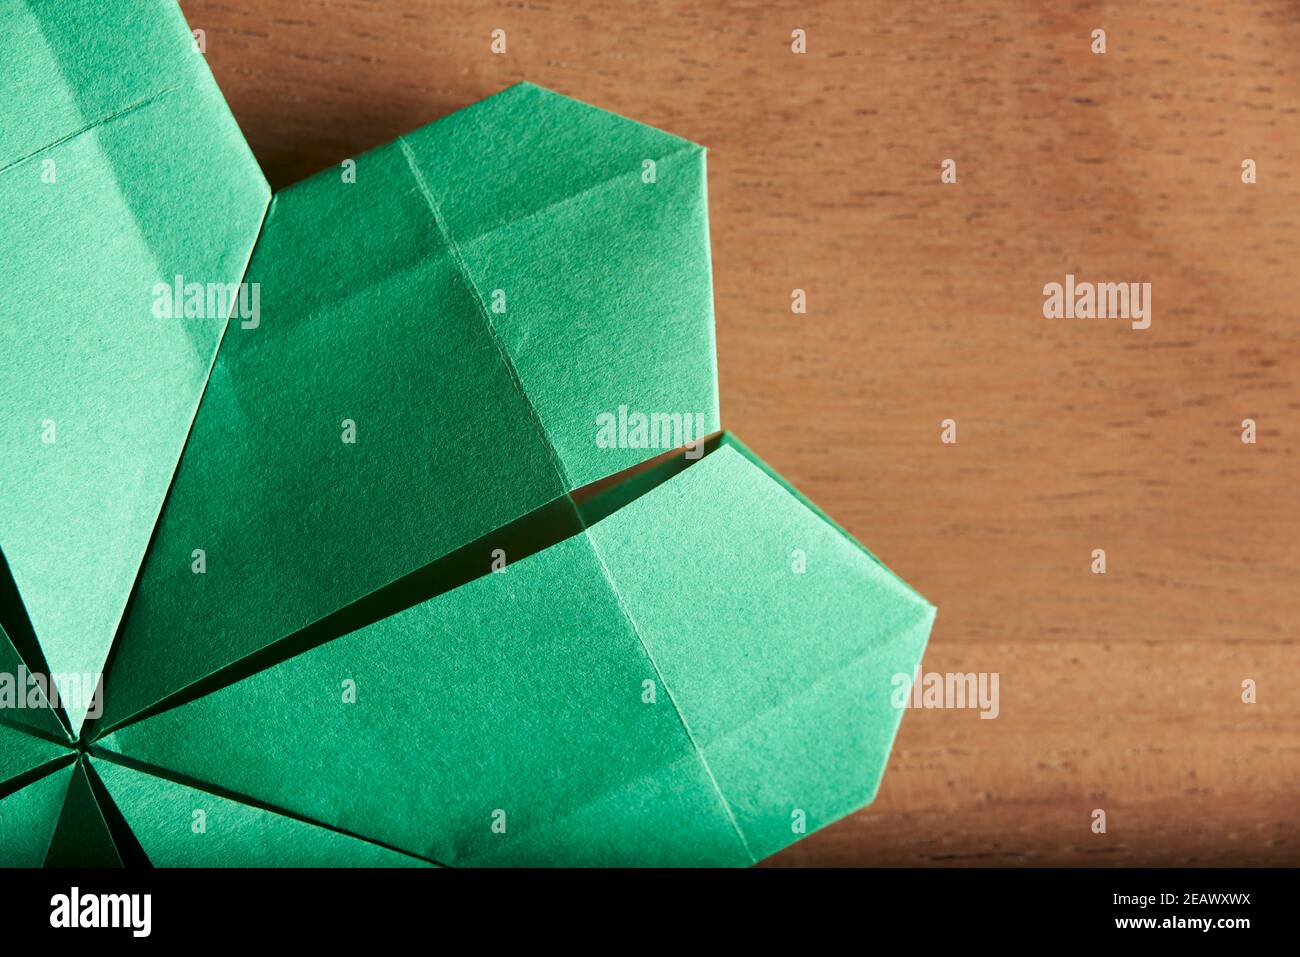 Détail d'un trèfle à quatre feuilles en papier vert plié suivant la technique de l'origami, sur fond de bois. Flat lay, gros plan. Banque D'Images